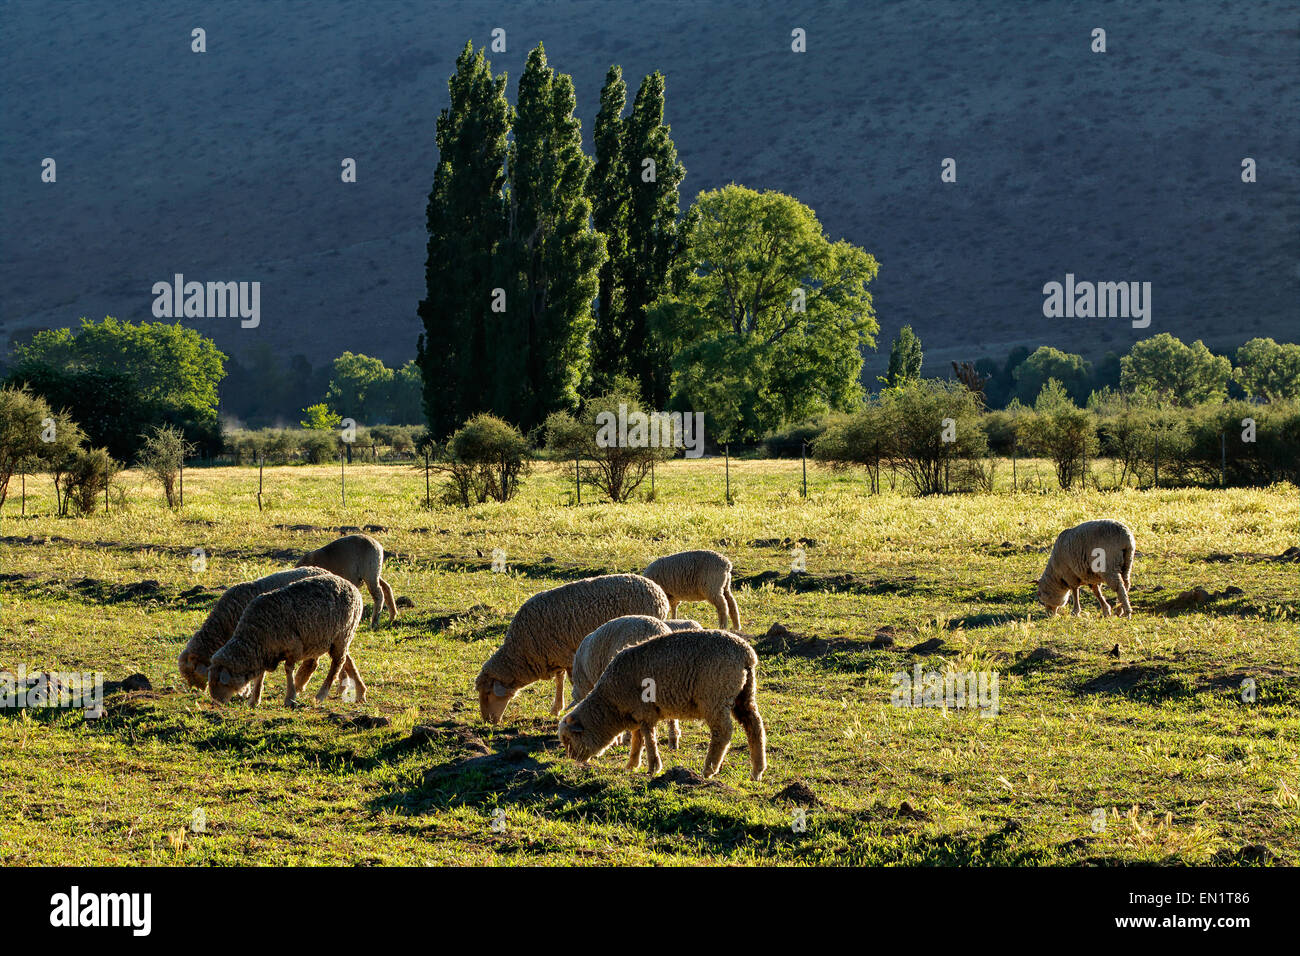 Paesaggio rurale con alberi, pascoli e pecore al pascolo nel tardo pomeriggio di luce, Karoo regione, Sud Africa Foto Stock